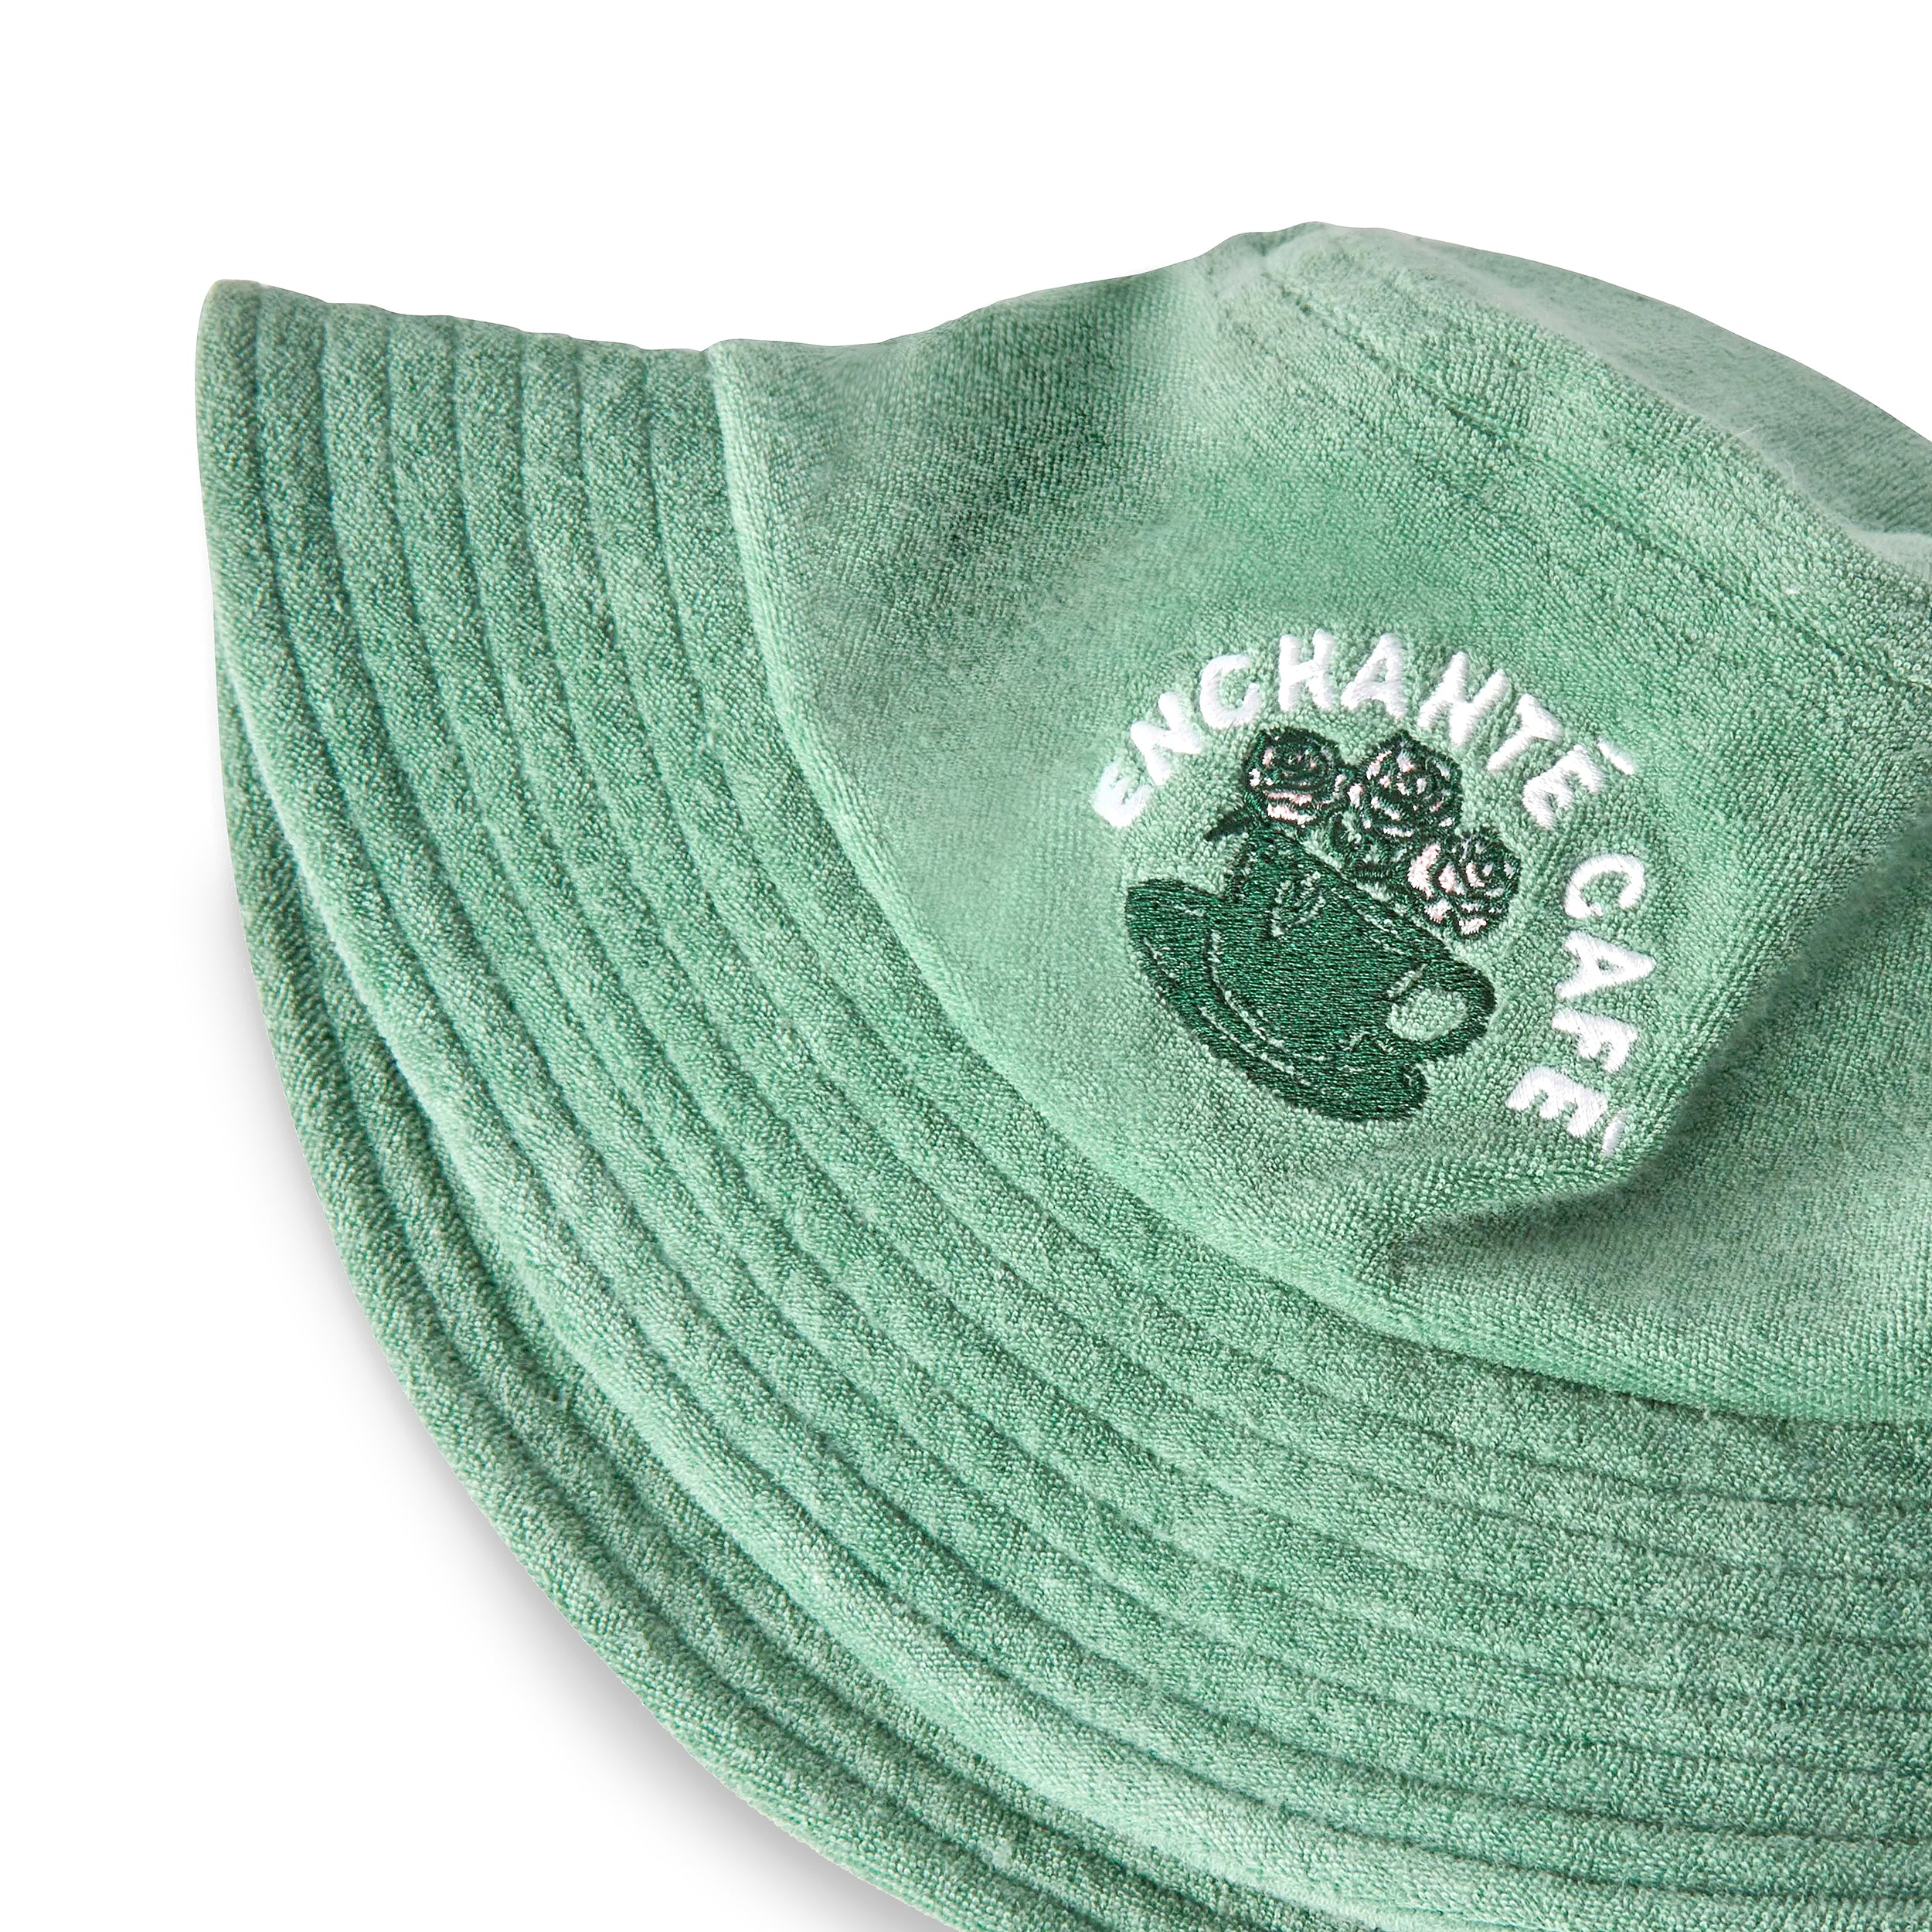 Paisley Bucket Hat, Green Bucket Hat, Denim Bucket Hat, Reversible Hat, Fisherman  Hats, 90's Bucket Hat. -  Canada